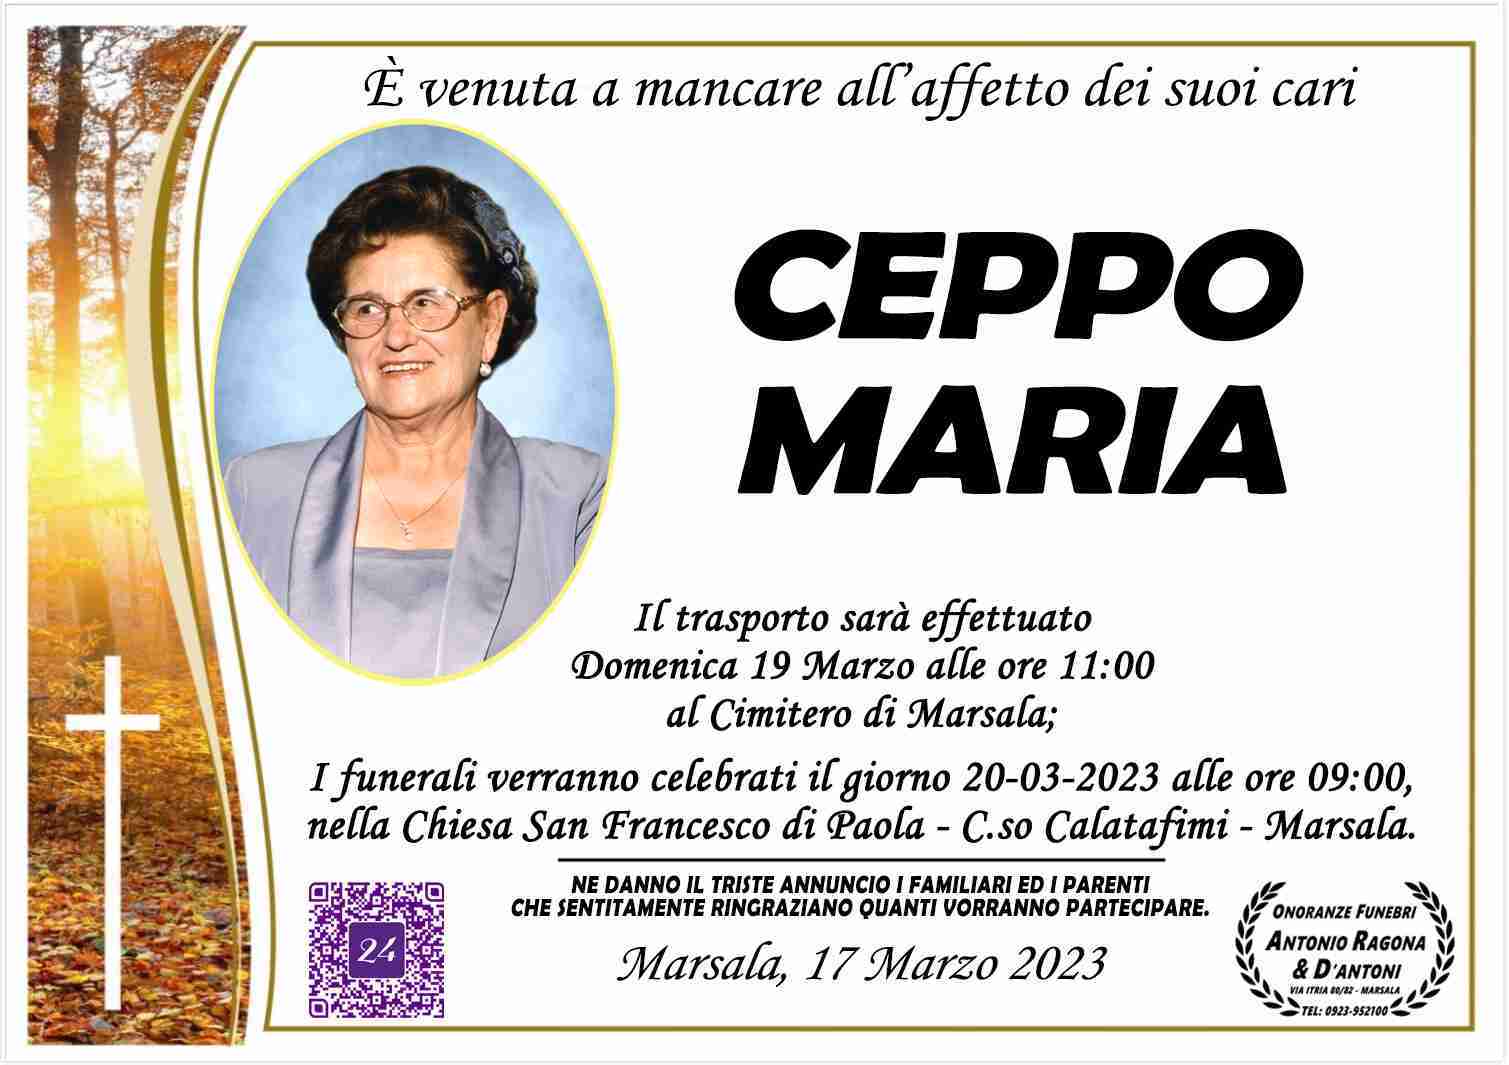 Maria Ceppo